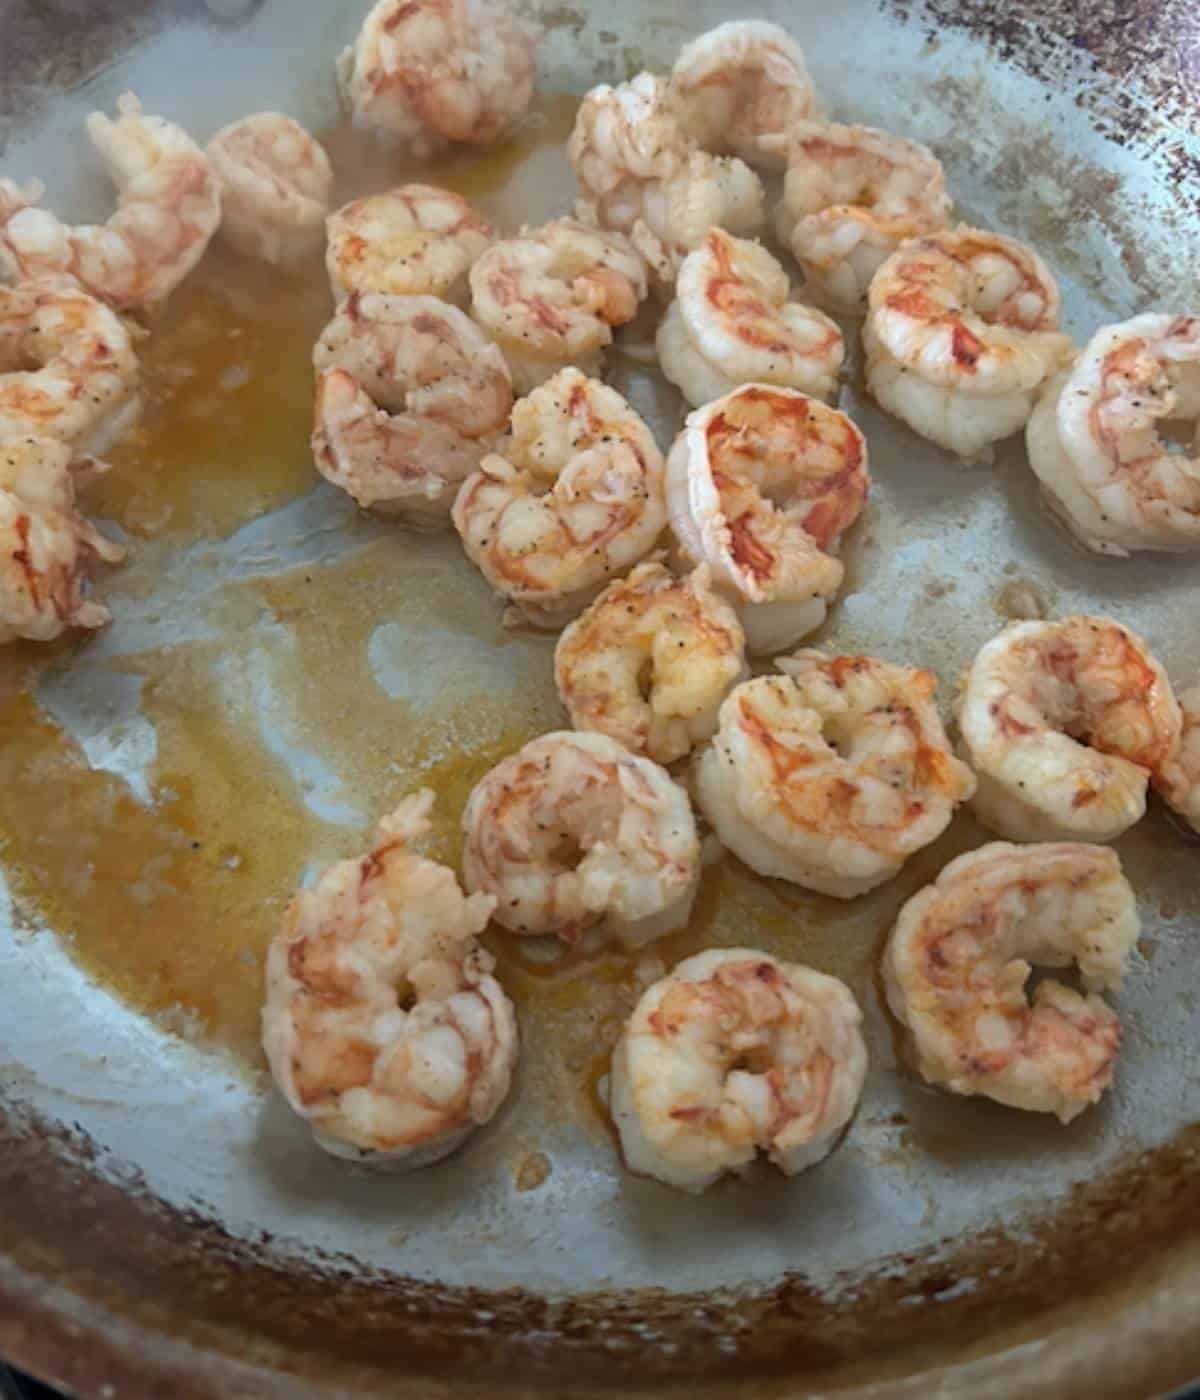 Shrimp searing in pan.